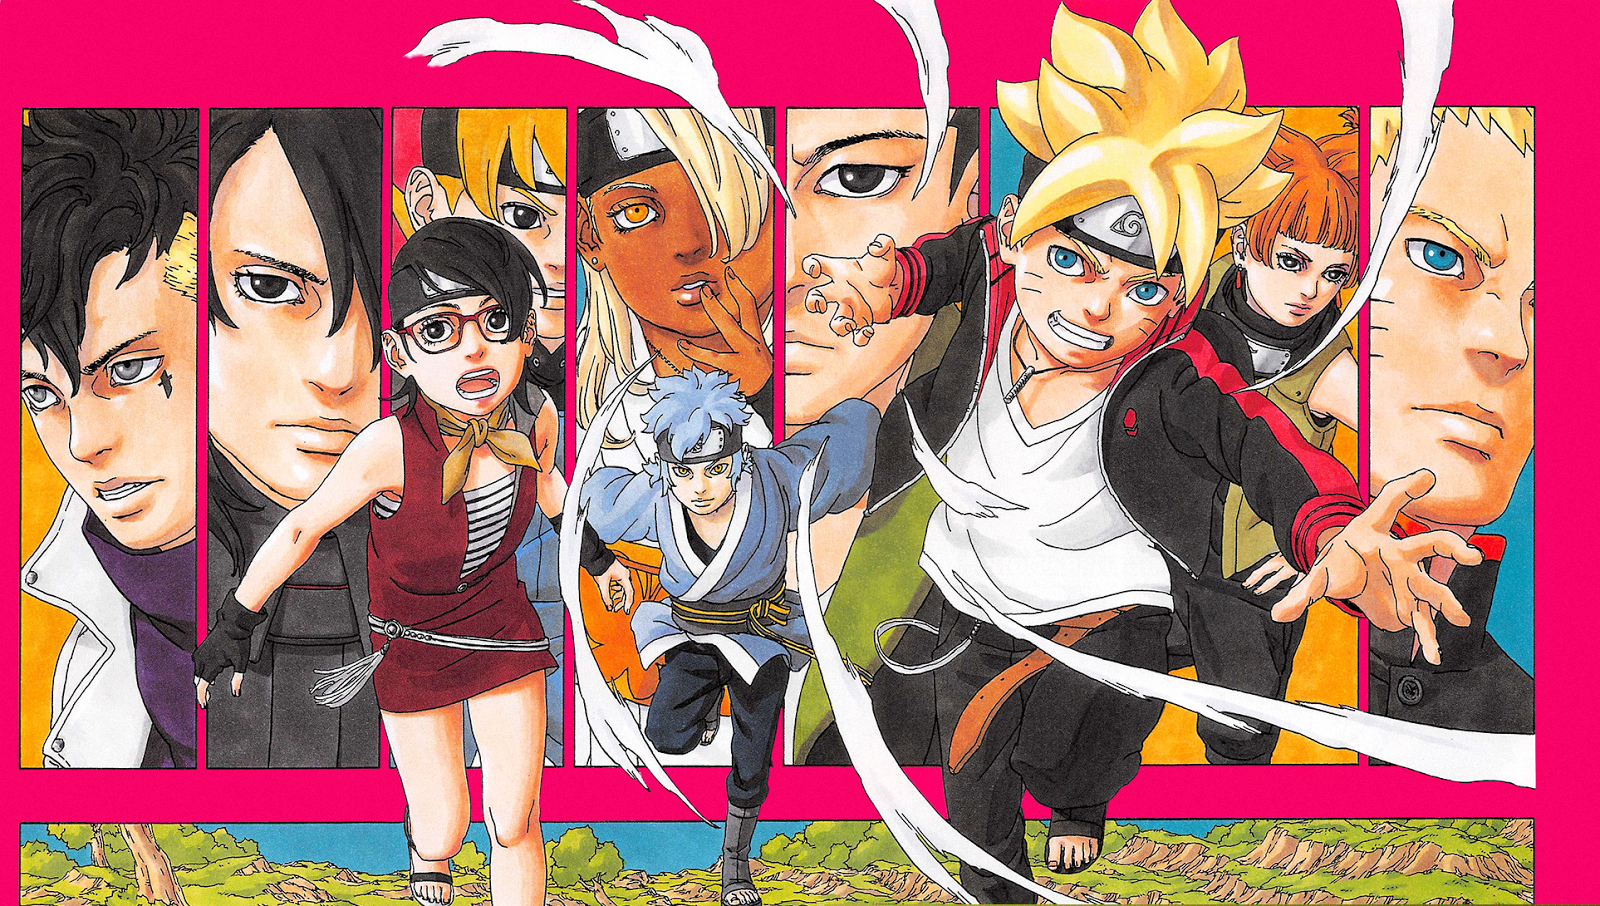 Boruto: Naruto Next Generations Episodes 1-5